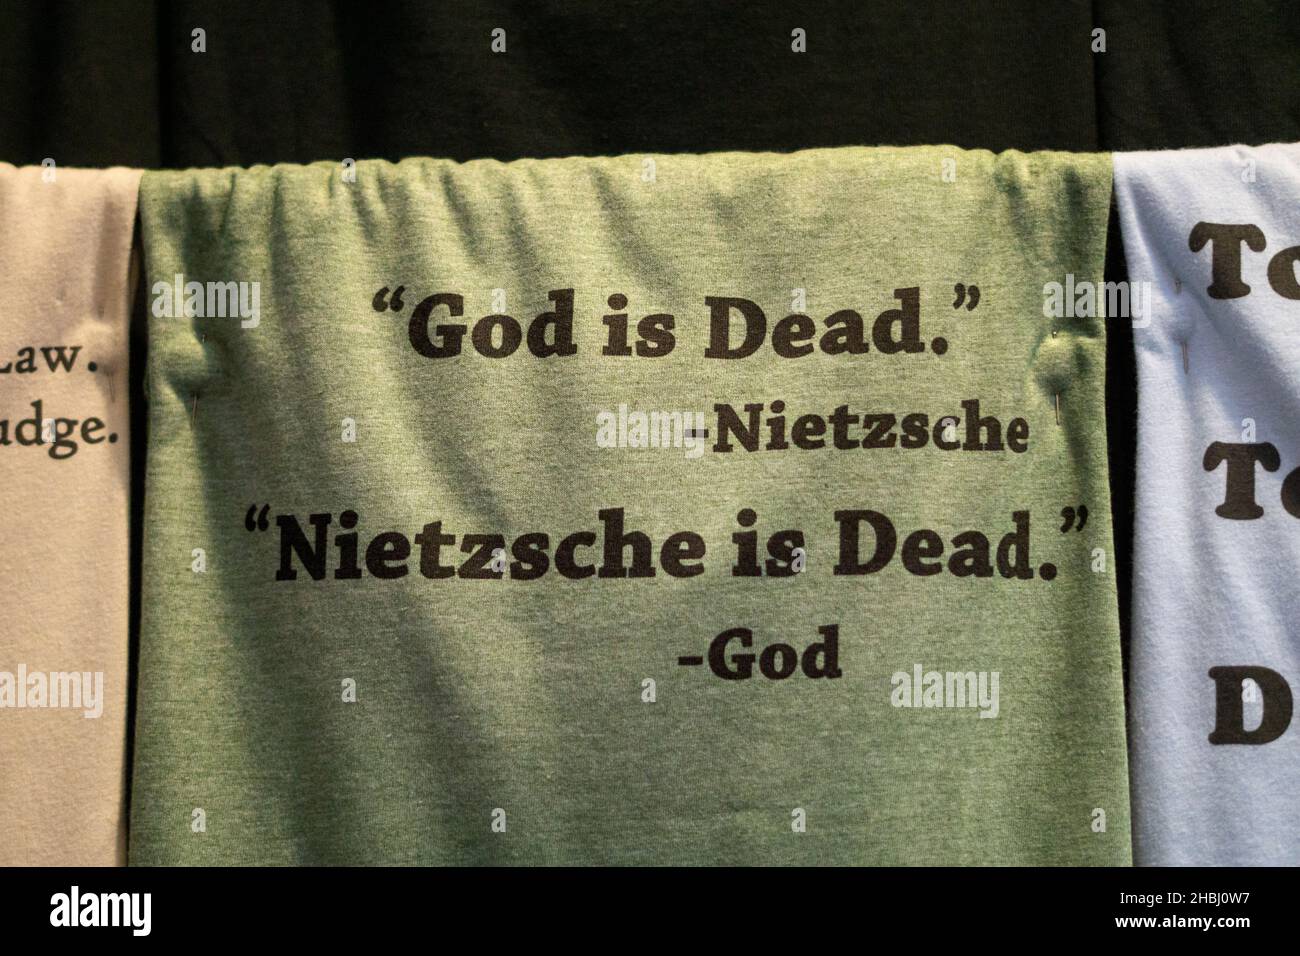 LA VENGANZA DE DIOS. Una broma sobre la famosa declaración del filósofo Friedrich Nietzsche de que Dios está muerto. En una tienda en Pittsburgh, Pennsylvania. Foto de stock